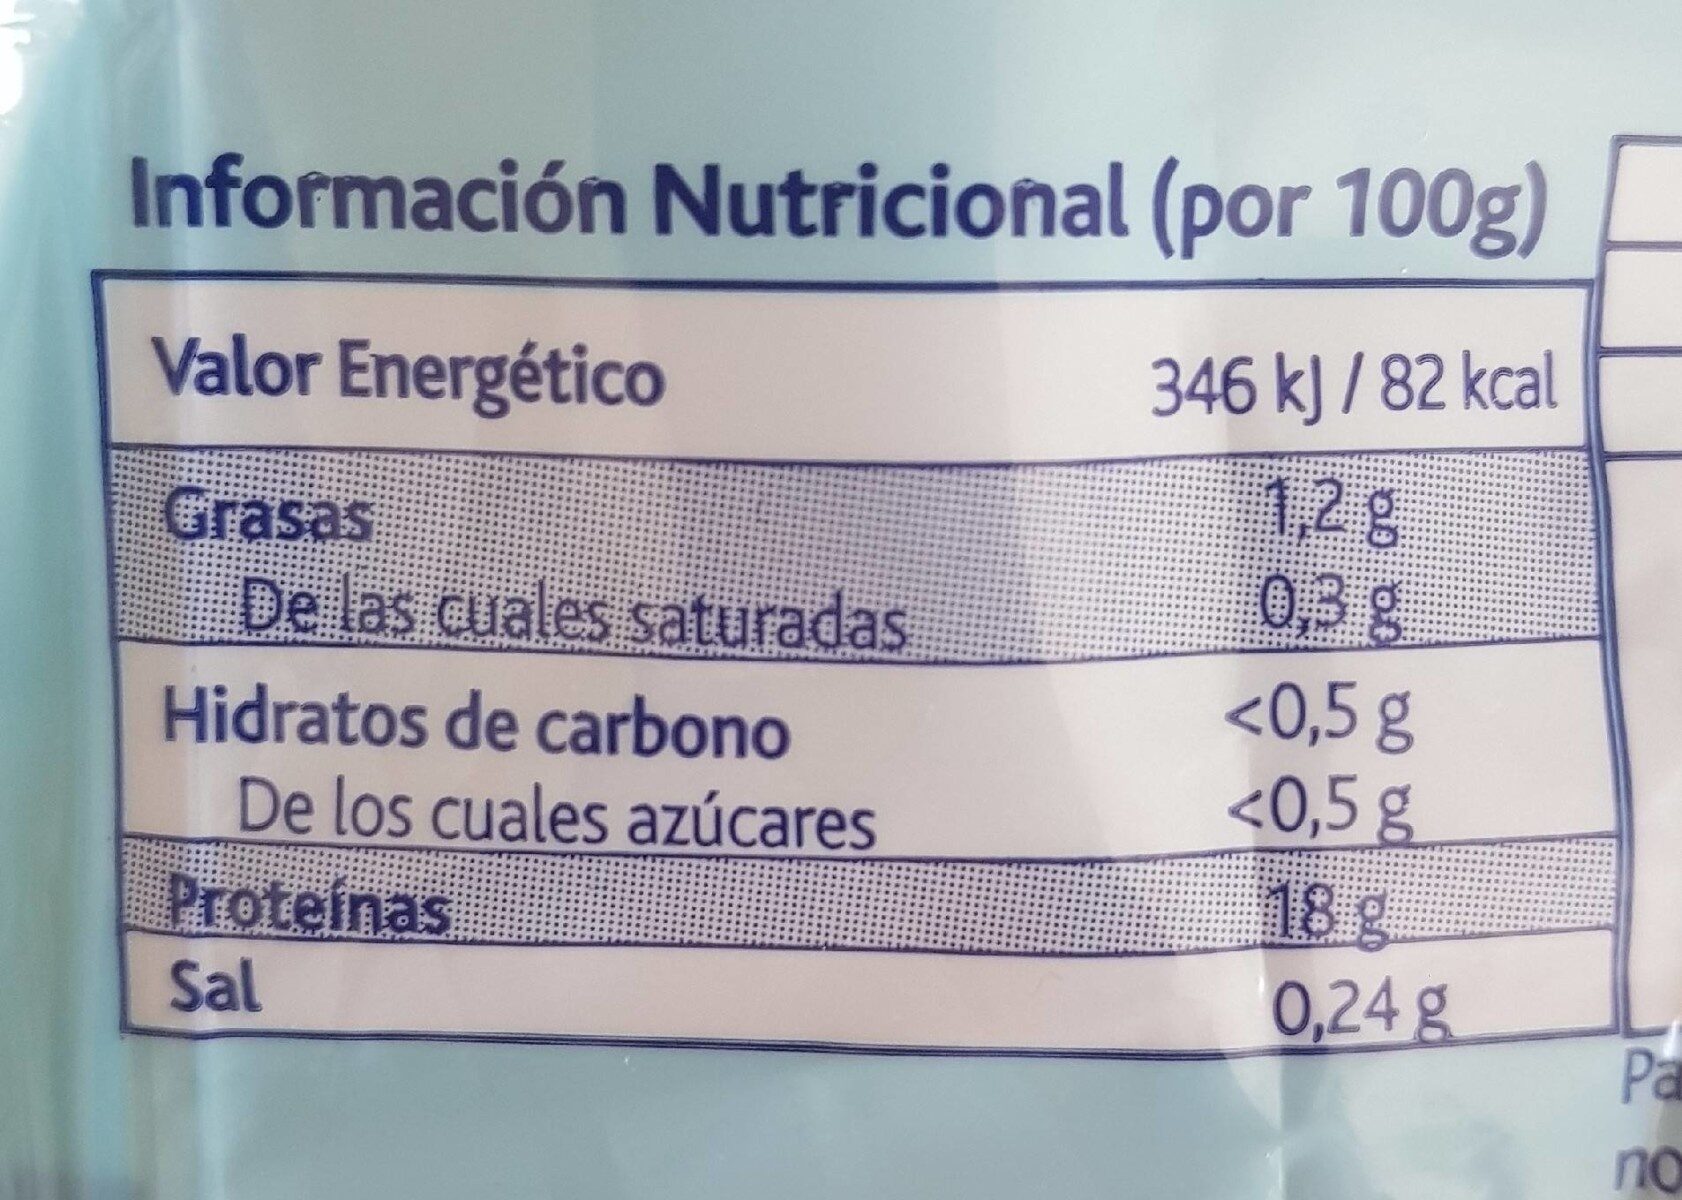 Filetes de merluza del cabo sin piel - Nutrition facts - fr